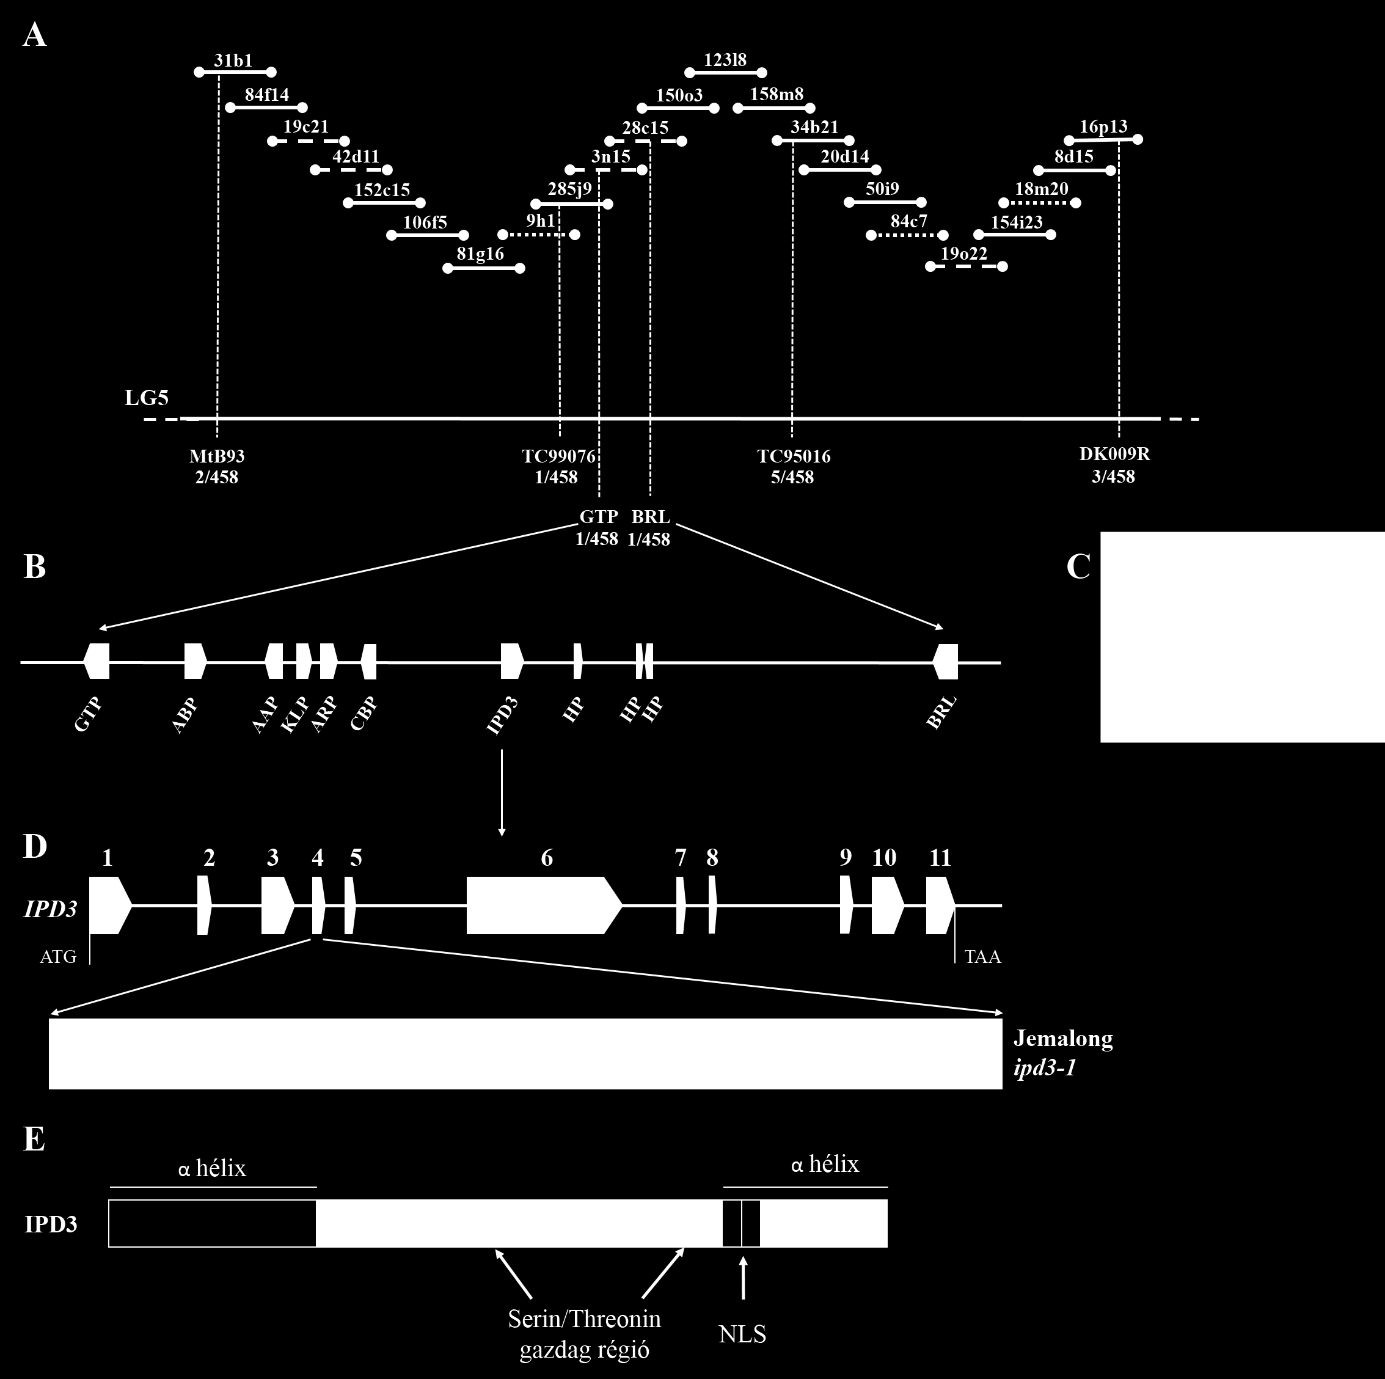 5.11. ábra: Az IPD3 genomi régiója, a deléció azonosítása; IPD3 fehérje szerkezete. A, ipd3-1 mutáns lókuszt tartalmazó BAC kontig MtB93 és DK009R szorosan kapcsolt határoló markerek között.